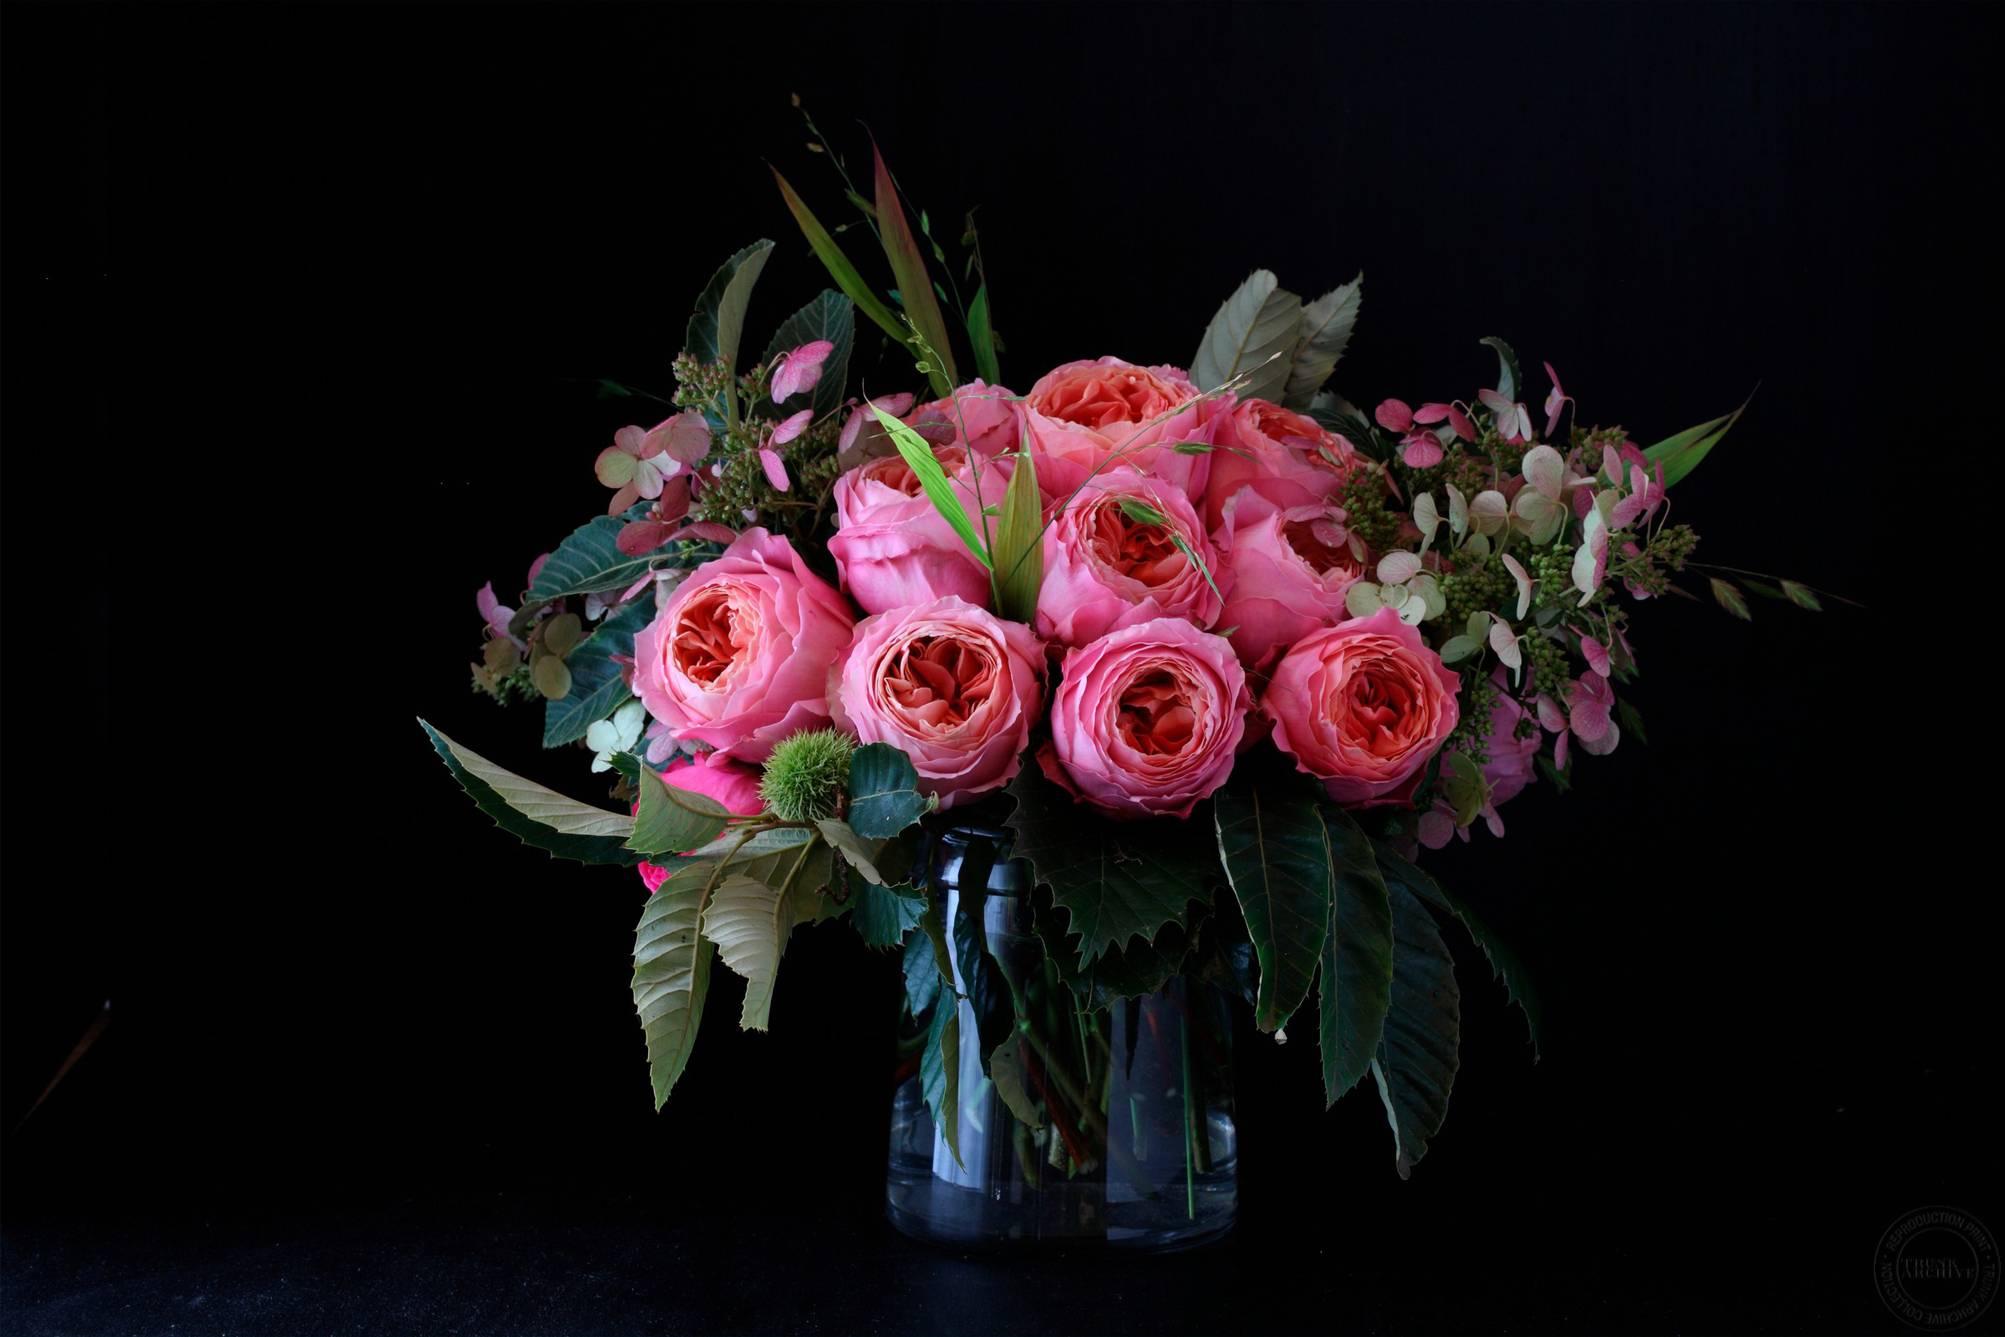 Don Freeman Color Photograph - Still Life (Floral Bouquet)